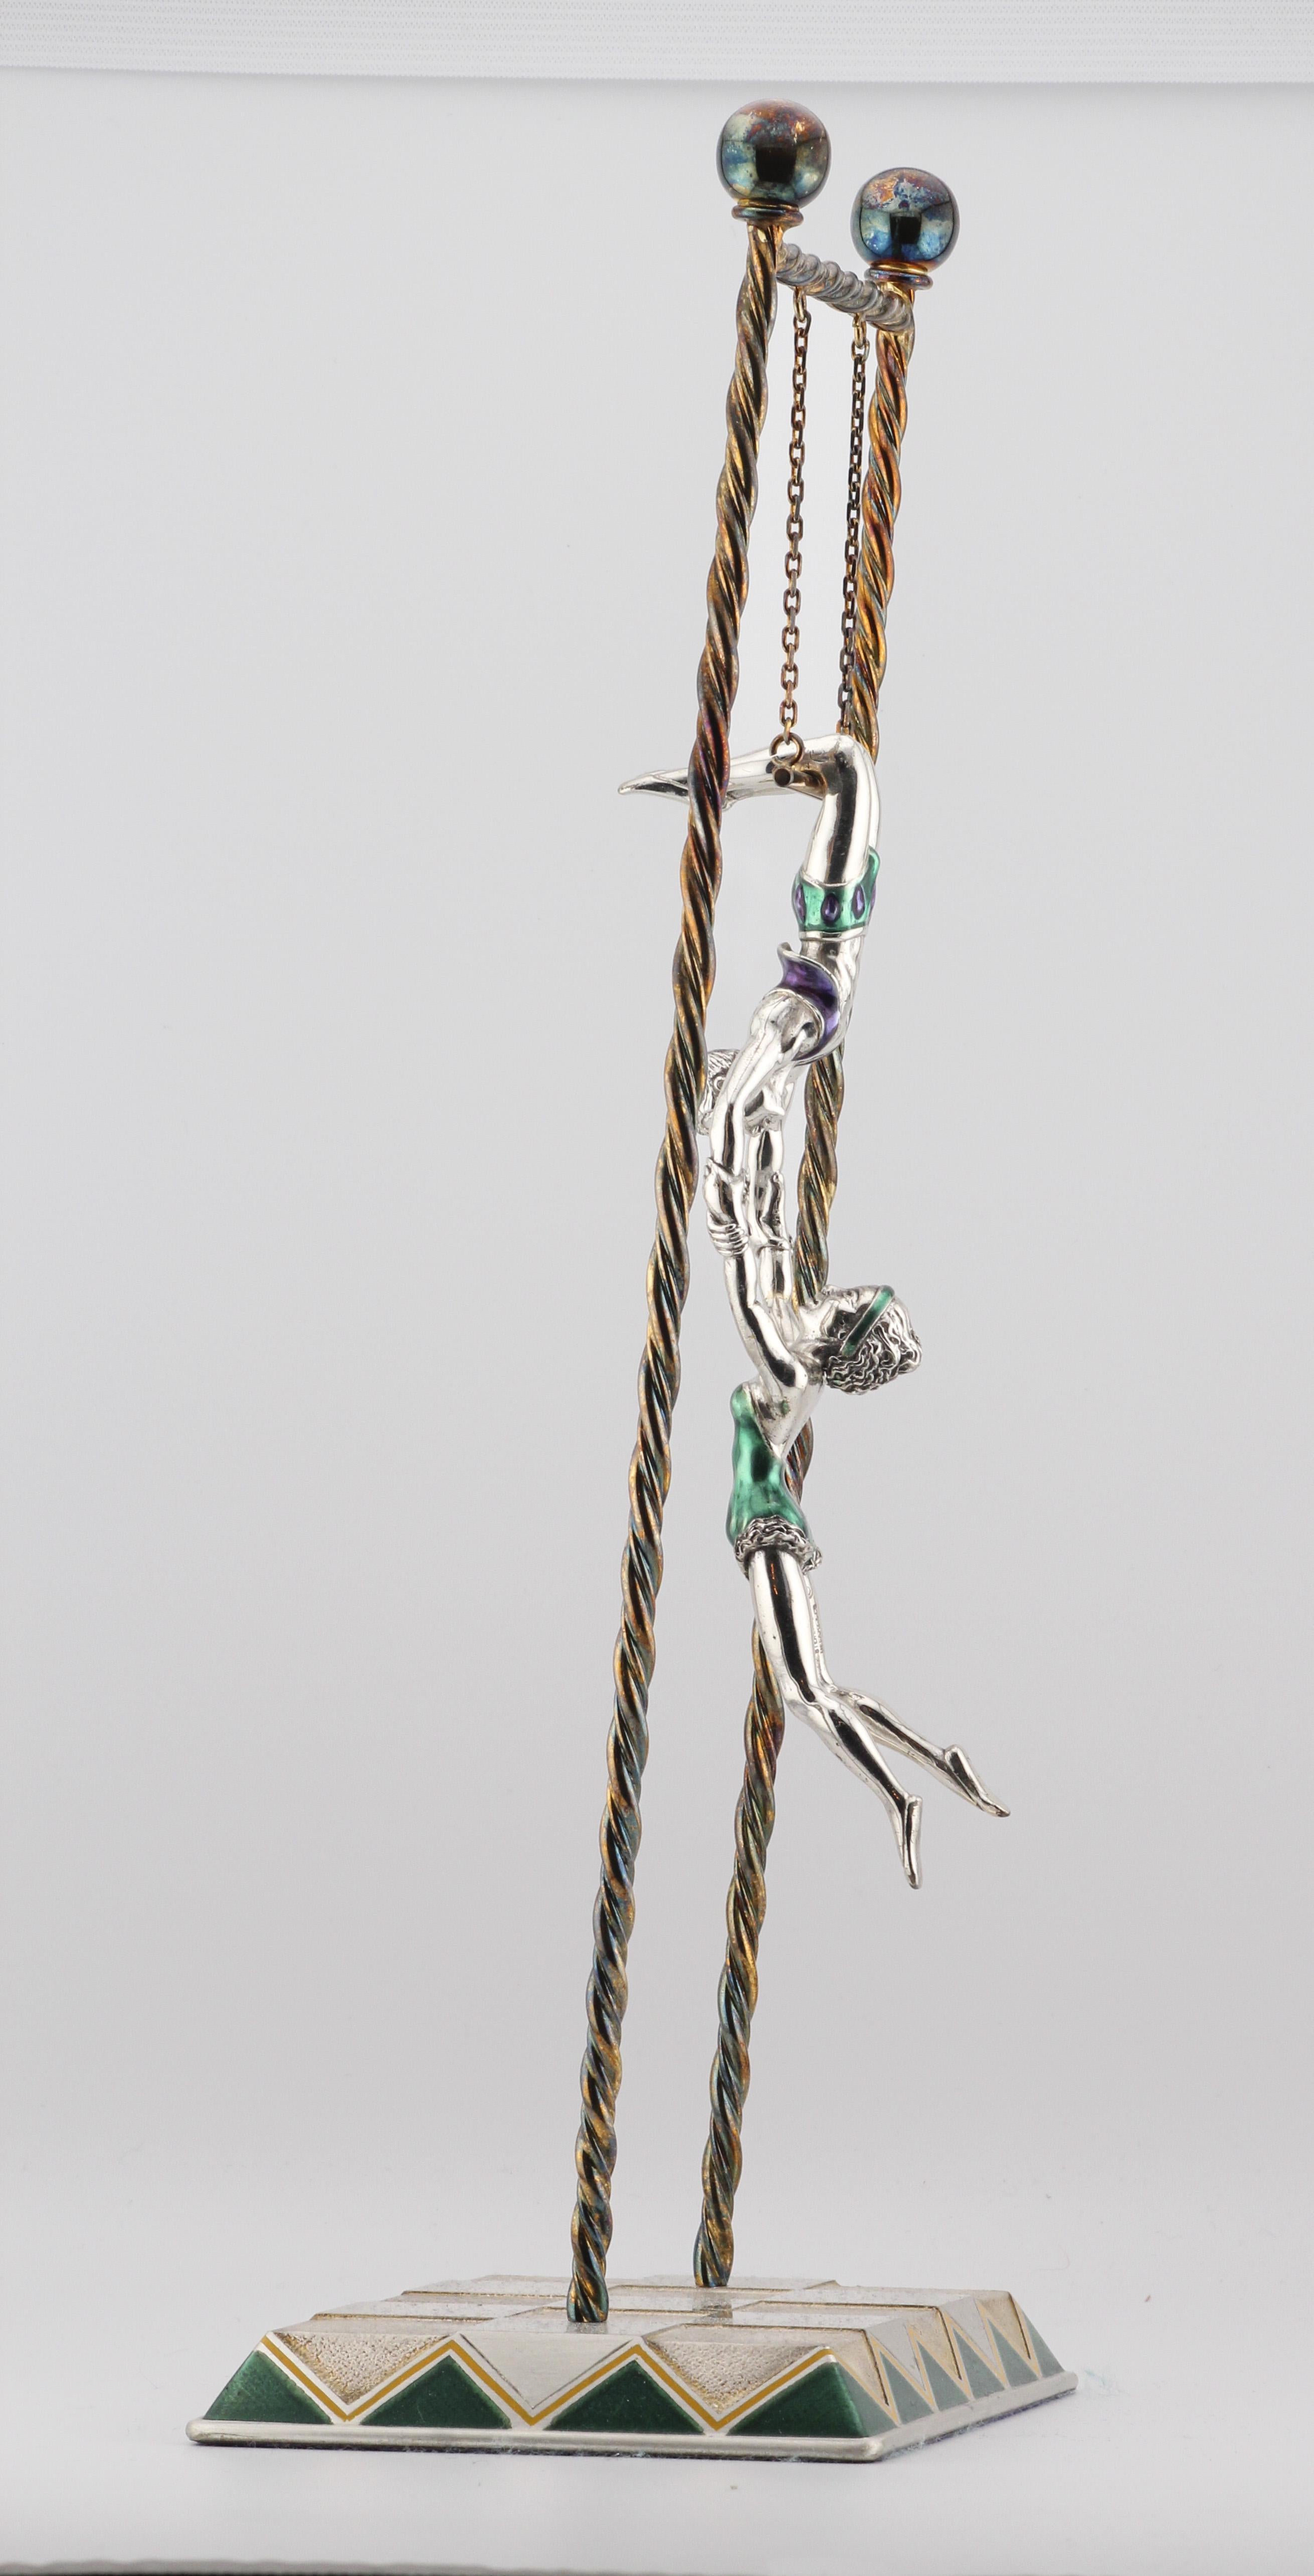 Tiffany & Co. présente une merveille enchanteresse : les acrobates du trapèze en argent sterling émaillé Circus. Cette pièce exquise incarne l'esprit audacieux et la grâce des trapézistes dans une démonstration captivante d'art et